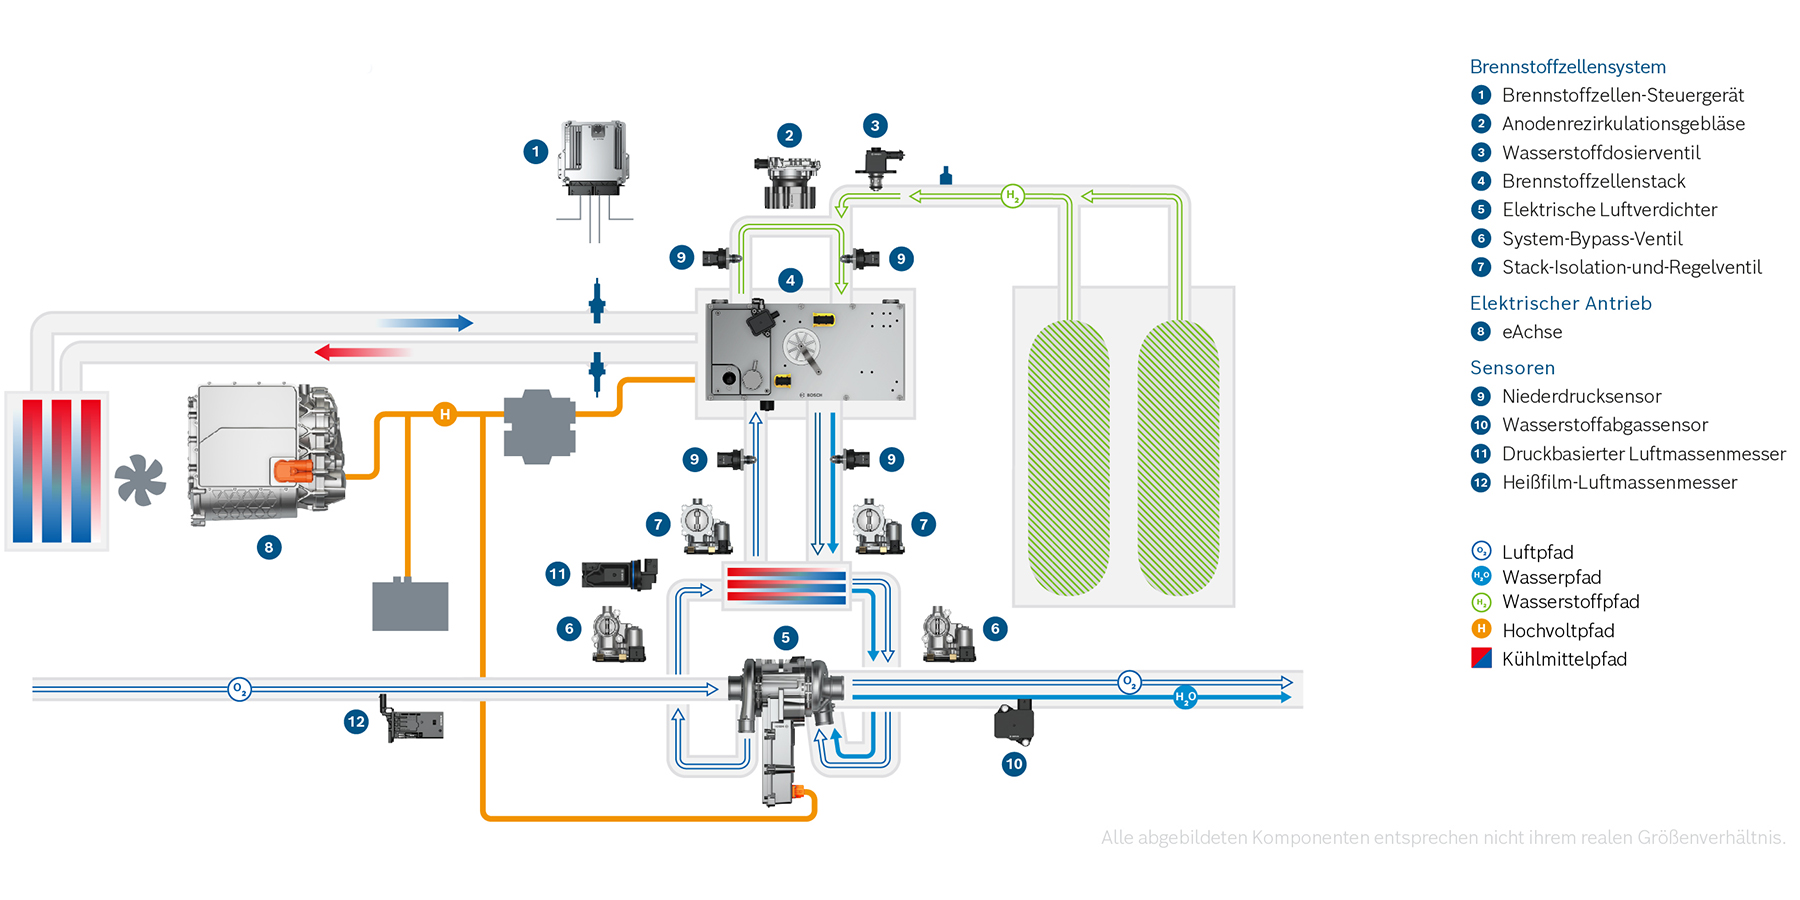 Systemgrafik brennstoffzellenelektrischer Antrieb